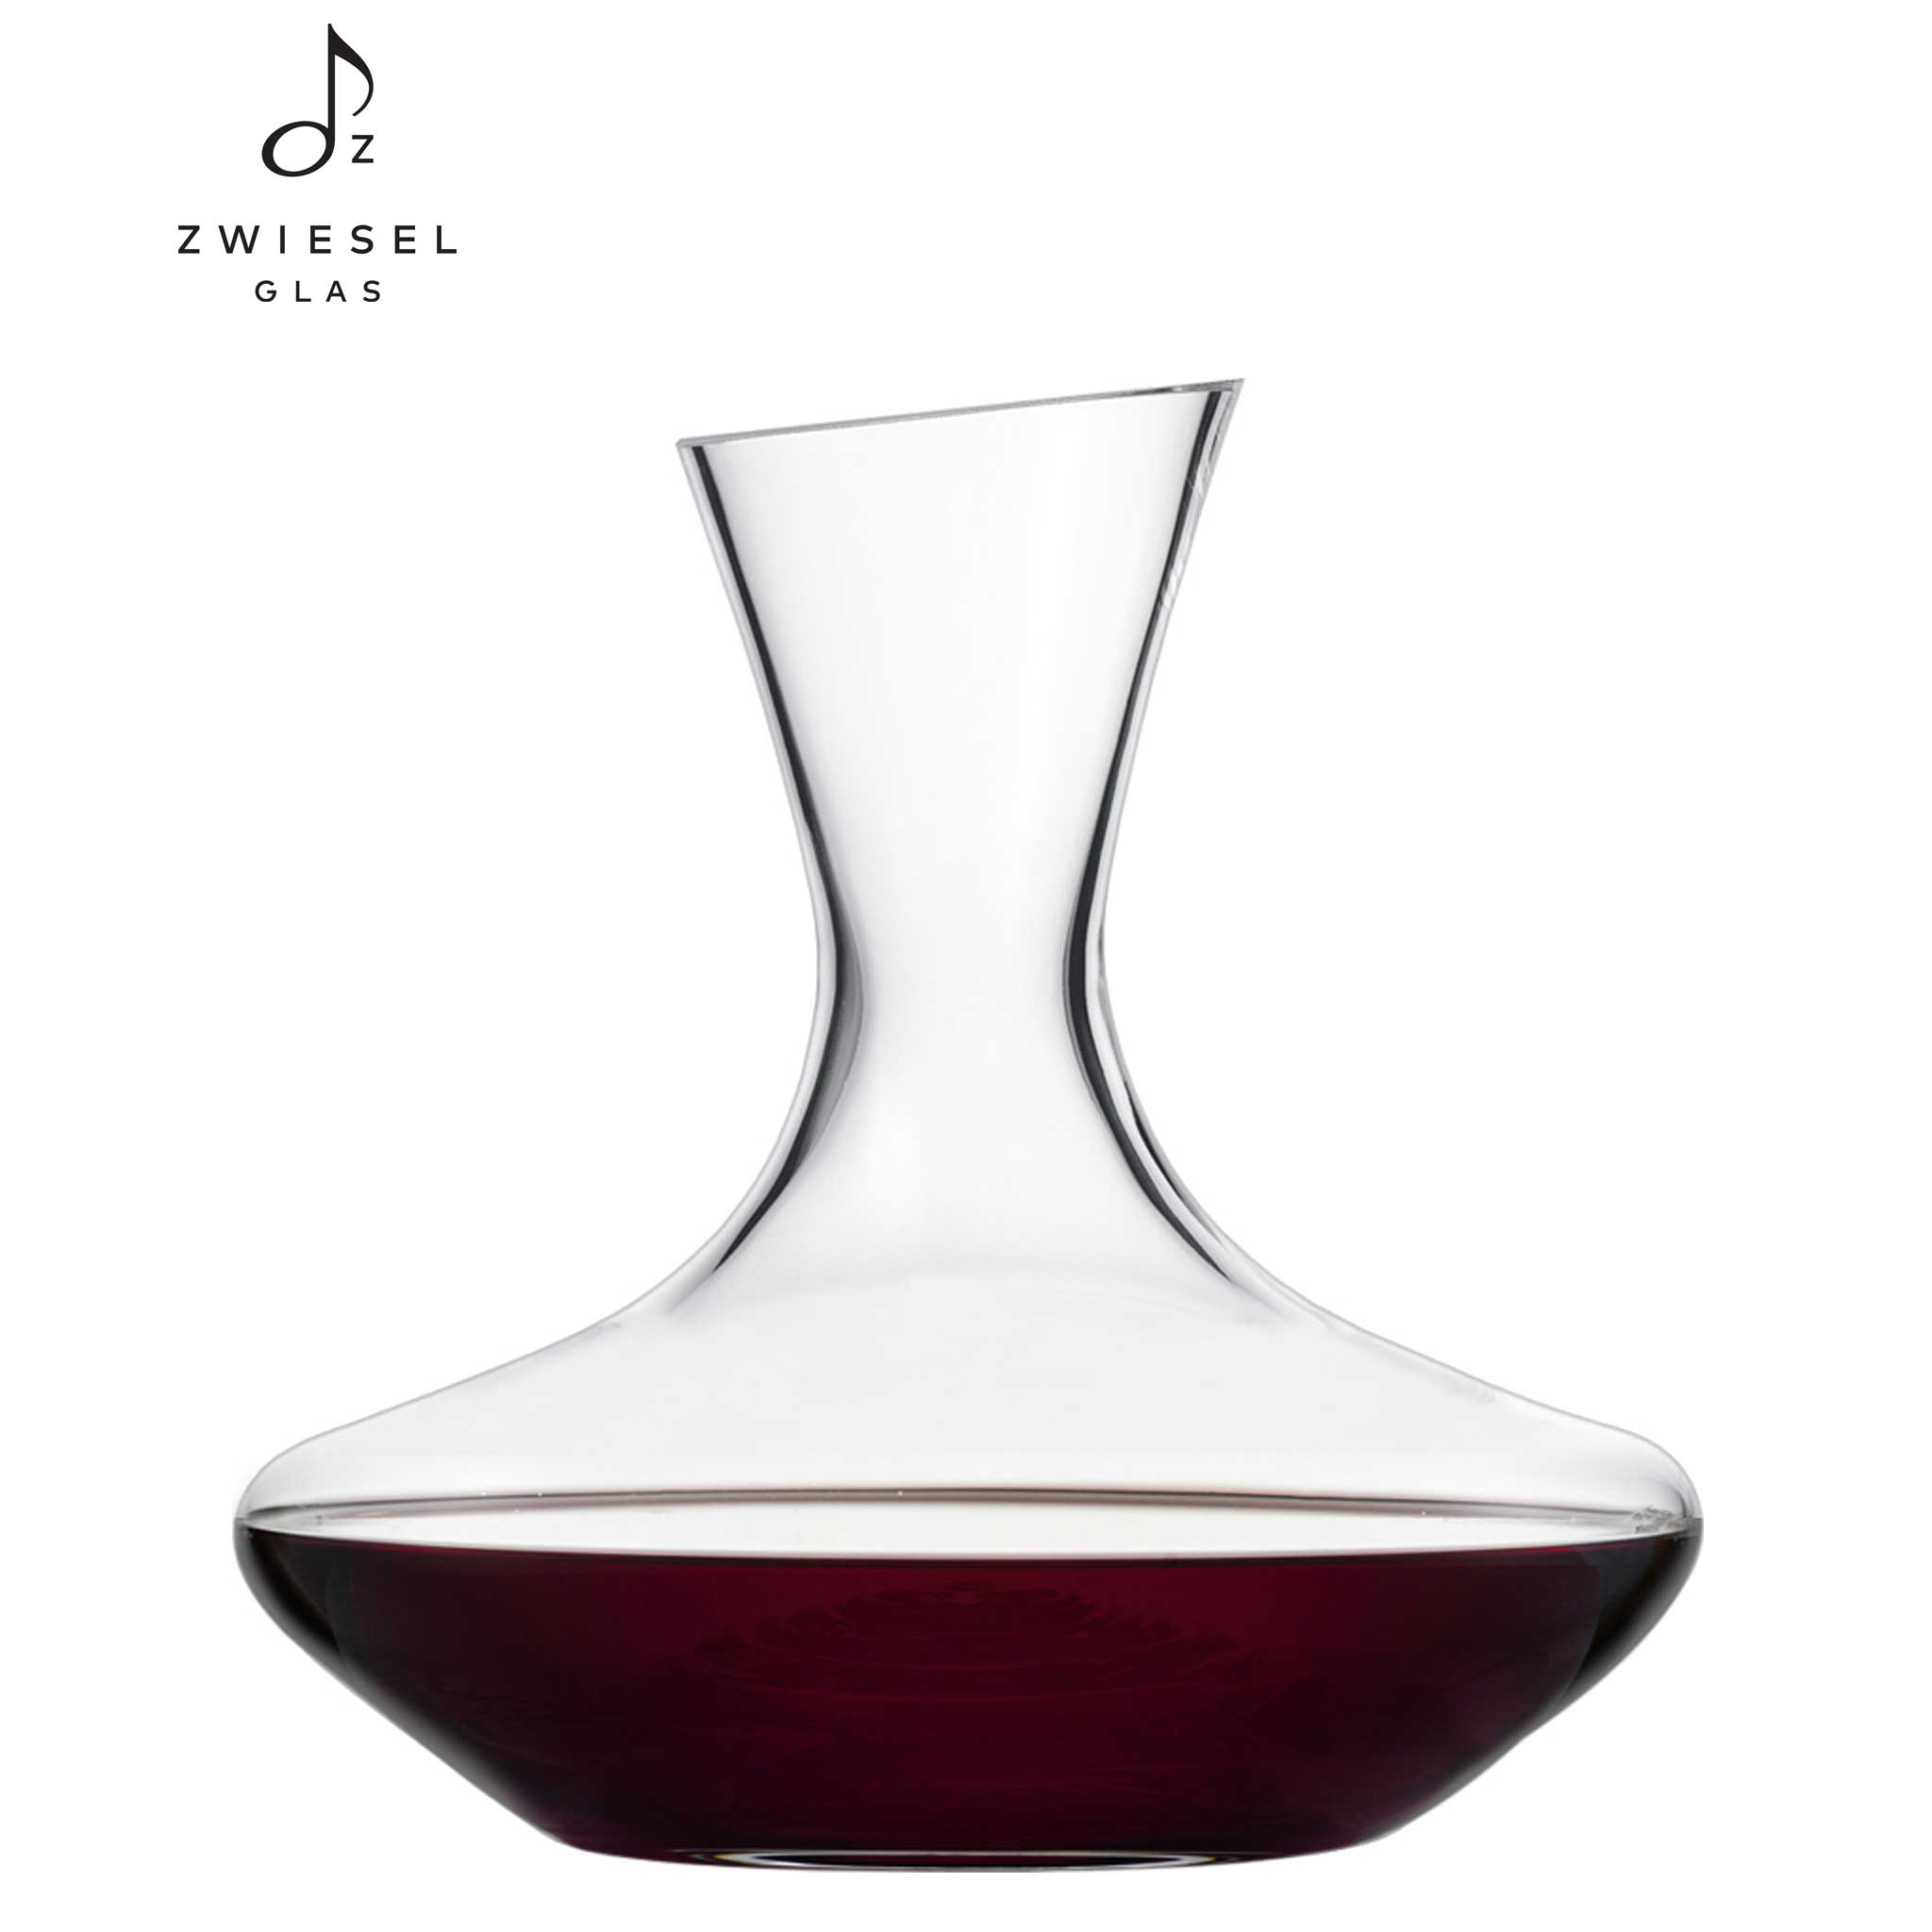 このポルックスは、エレガントなシルエットとクリスタル独特の重厚さが高級感を与えてくれるデザイン。さらにデキャンティングしたときに、底部の凹凸がワインの中の酒石酸などの澱を固めて、ワインに混ざりにくくする機能もあります。